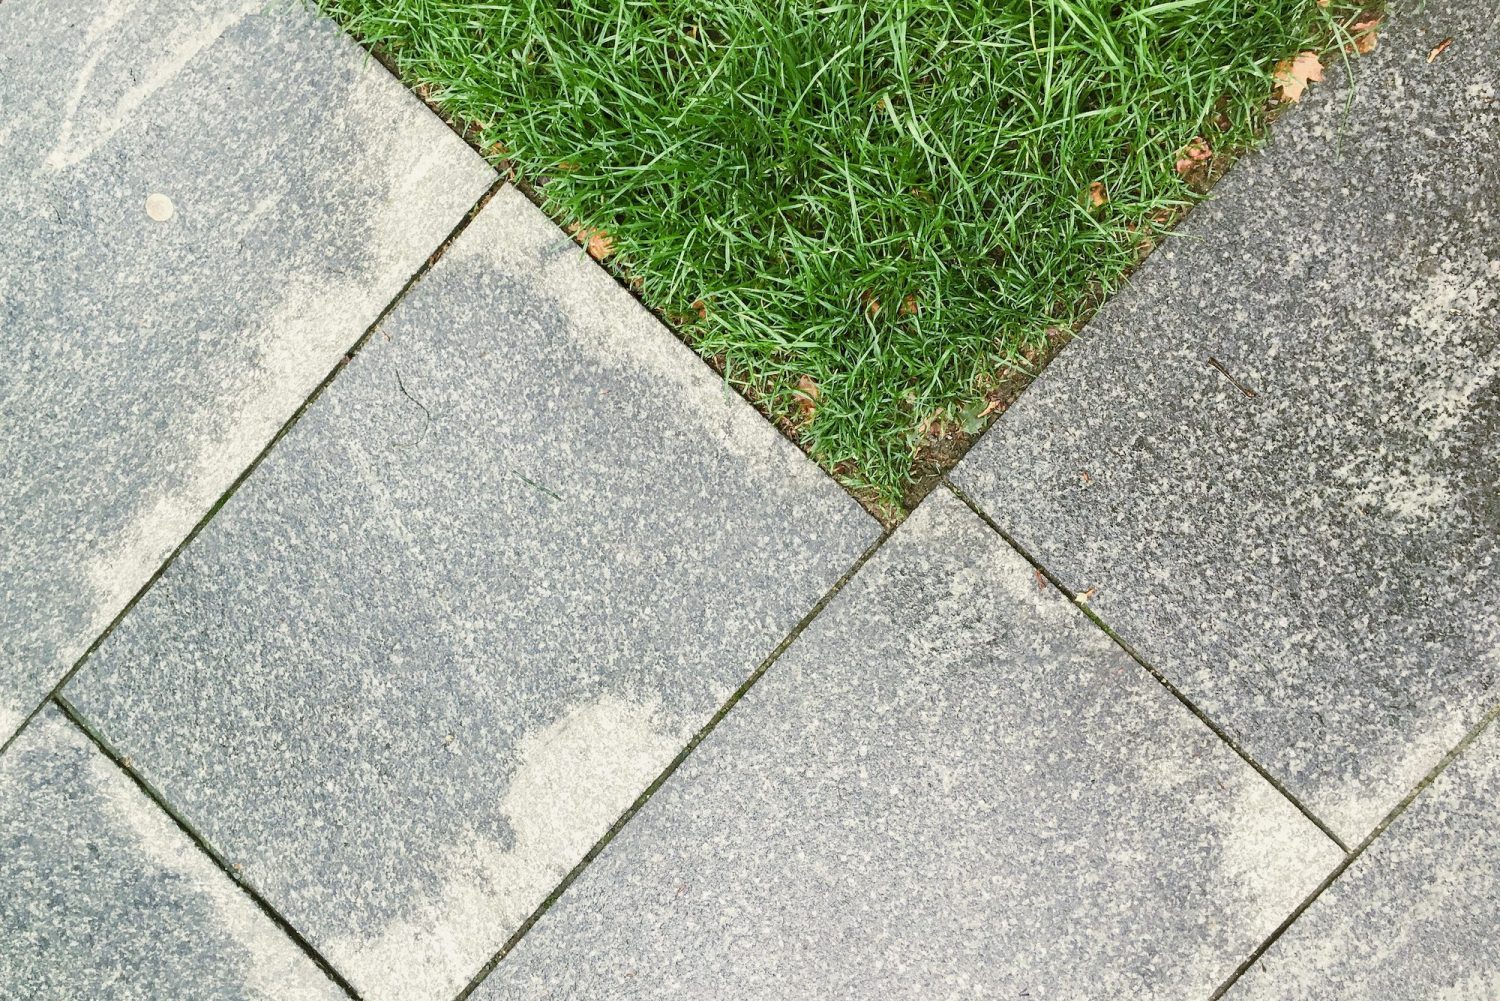 Sidewalk Concrete floor with grass